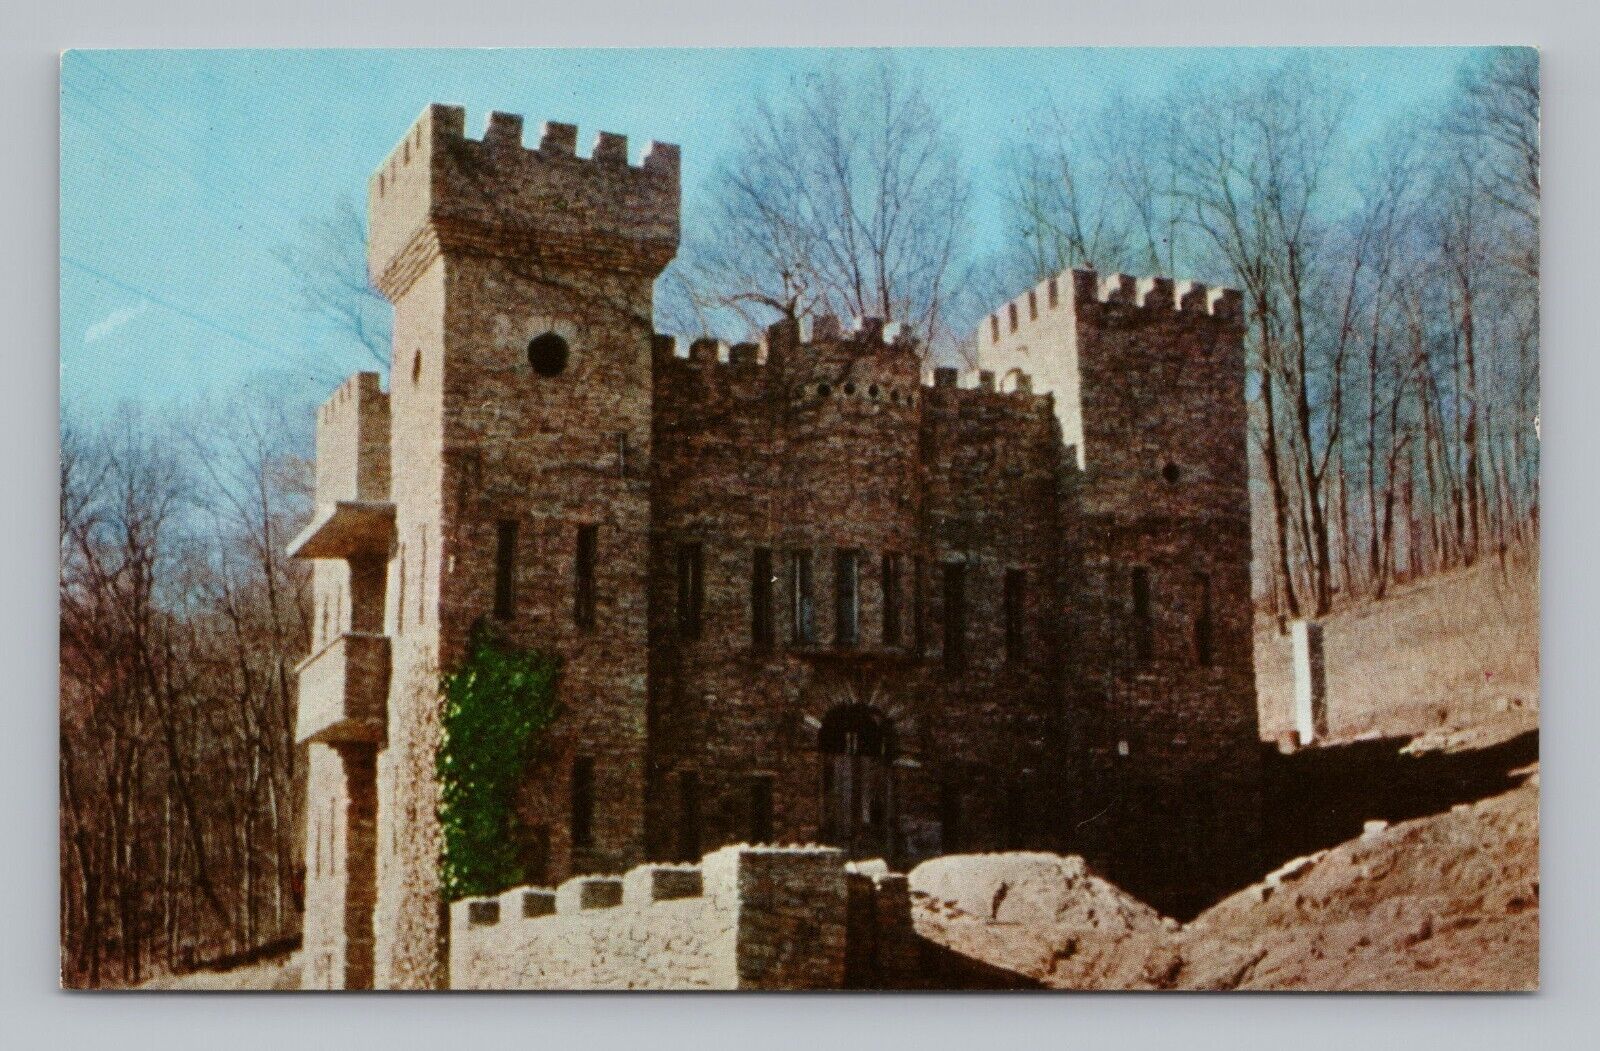 Postcard Chateau Laroche Rock Castle Loveland Ohio Poem In Stone